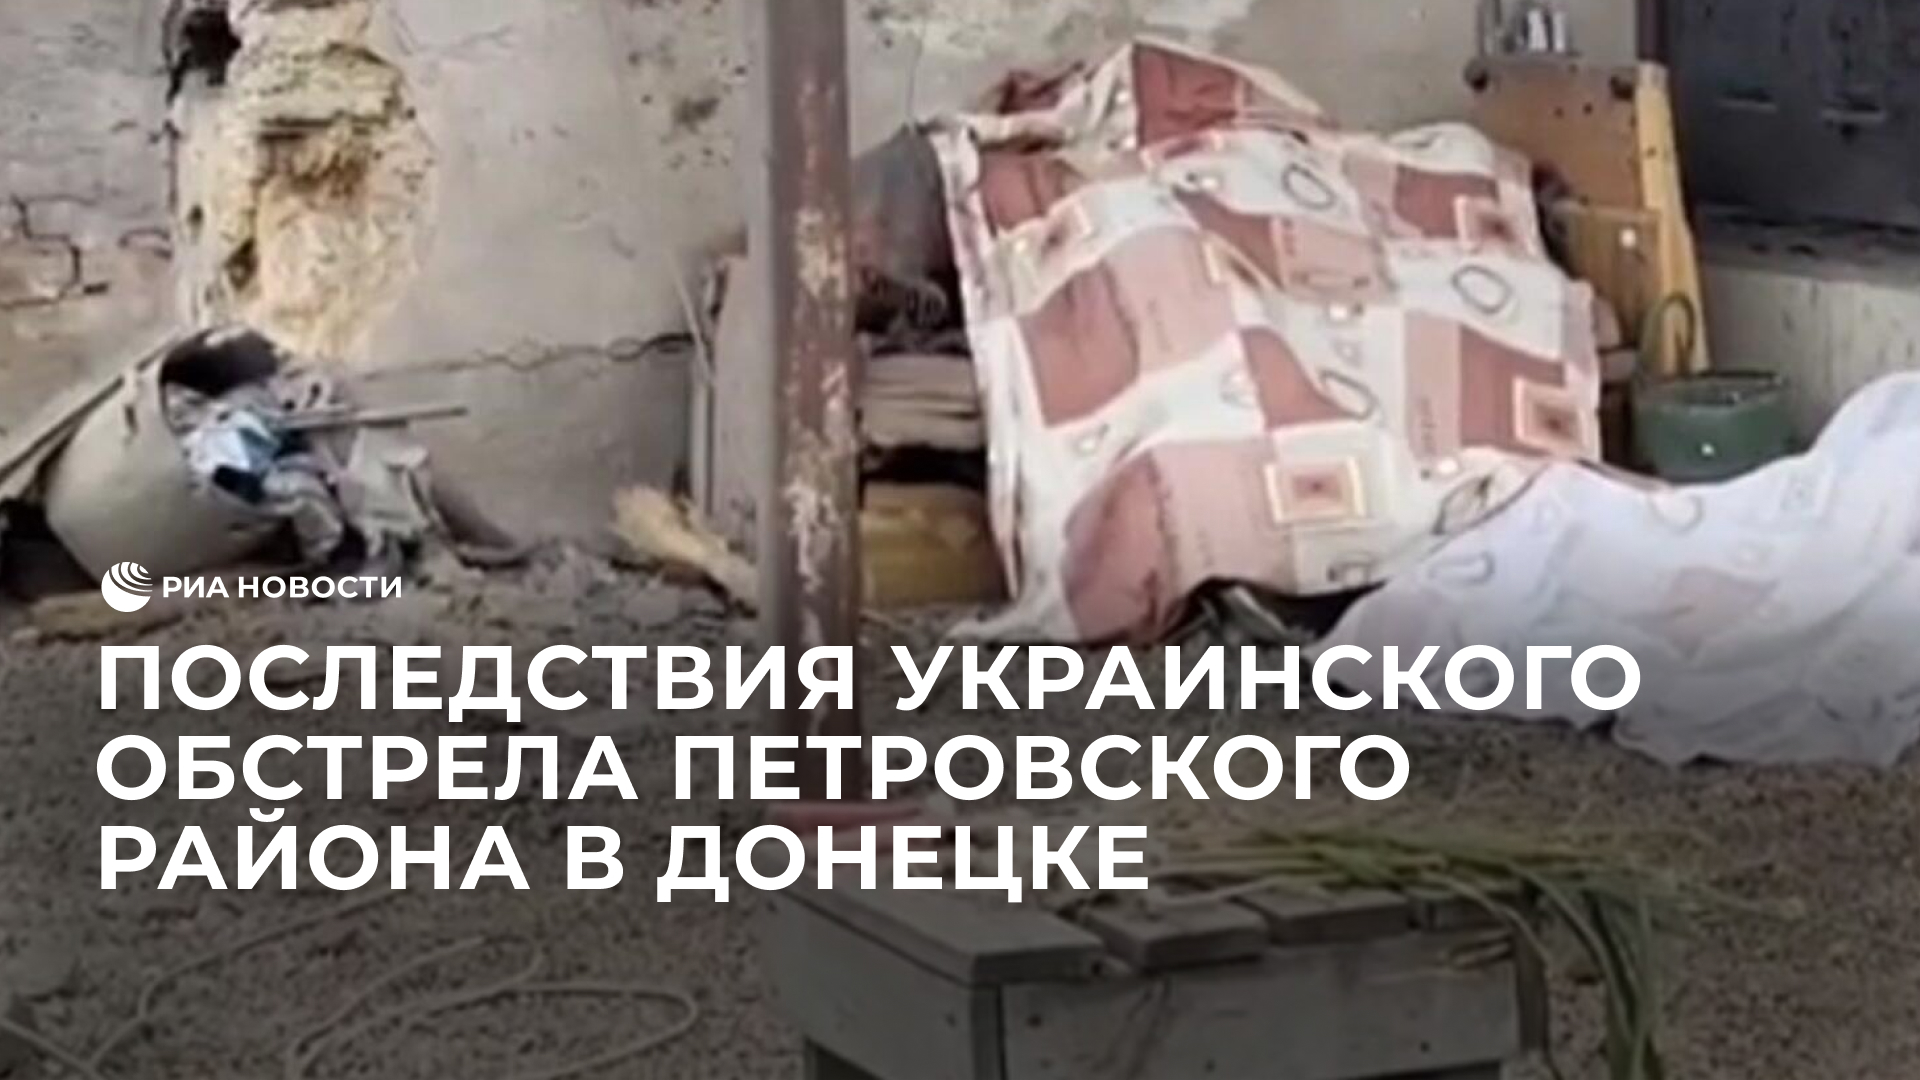 Последствия украинского обстрела Петровского района в Донецке